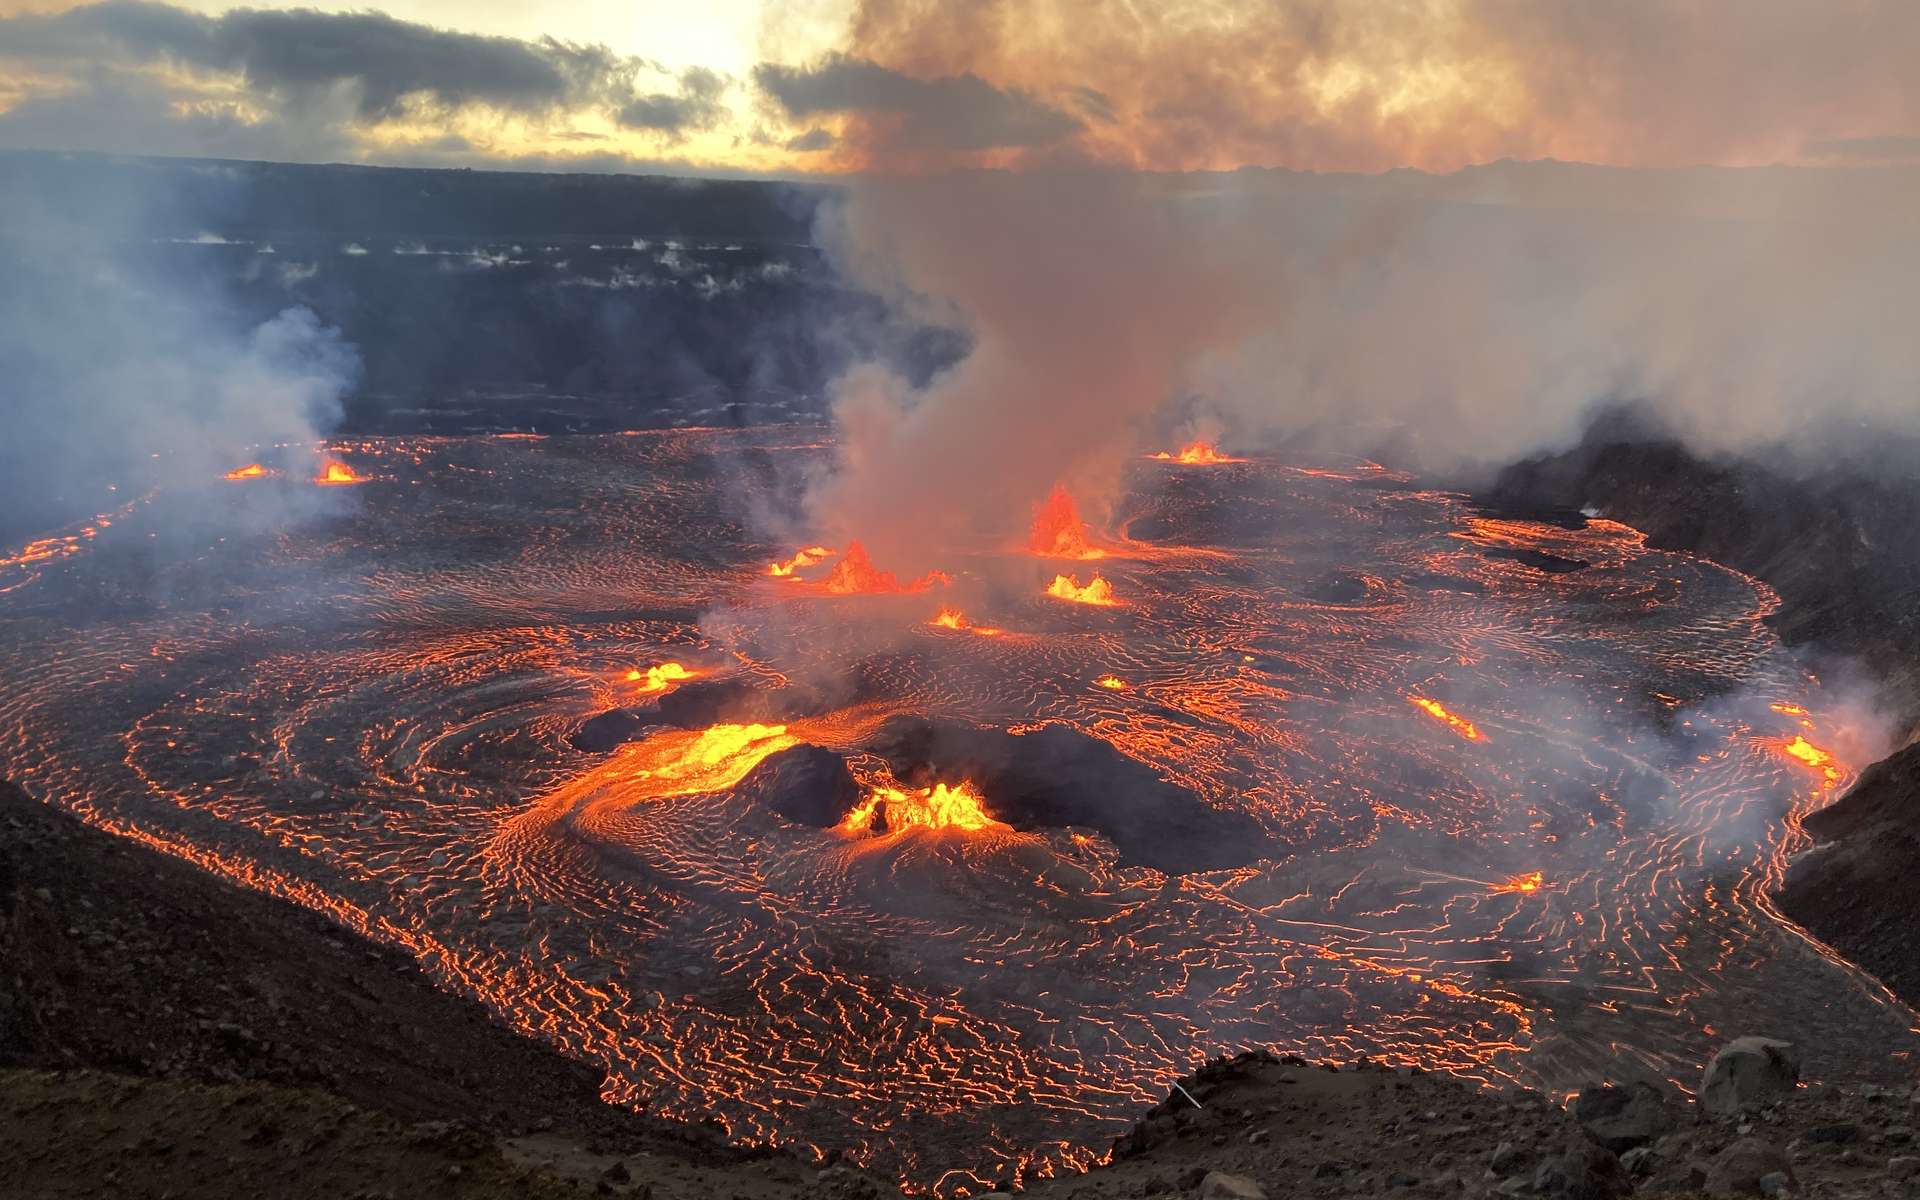 Les images impressionnantes de l'éruption du volcan Kilauea à Hawaii